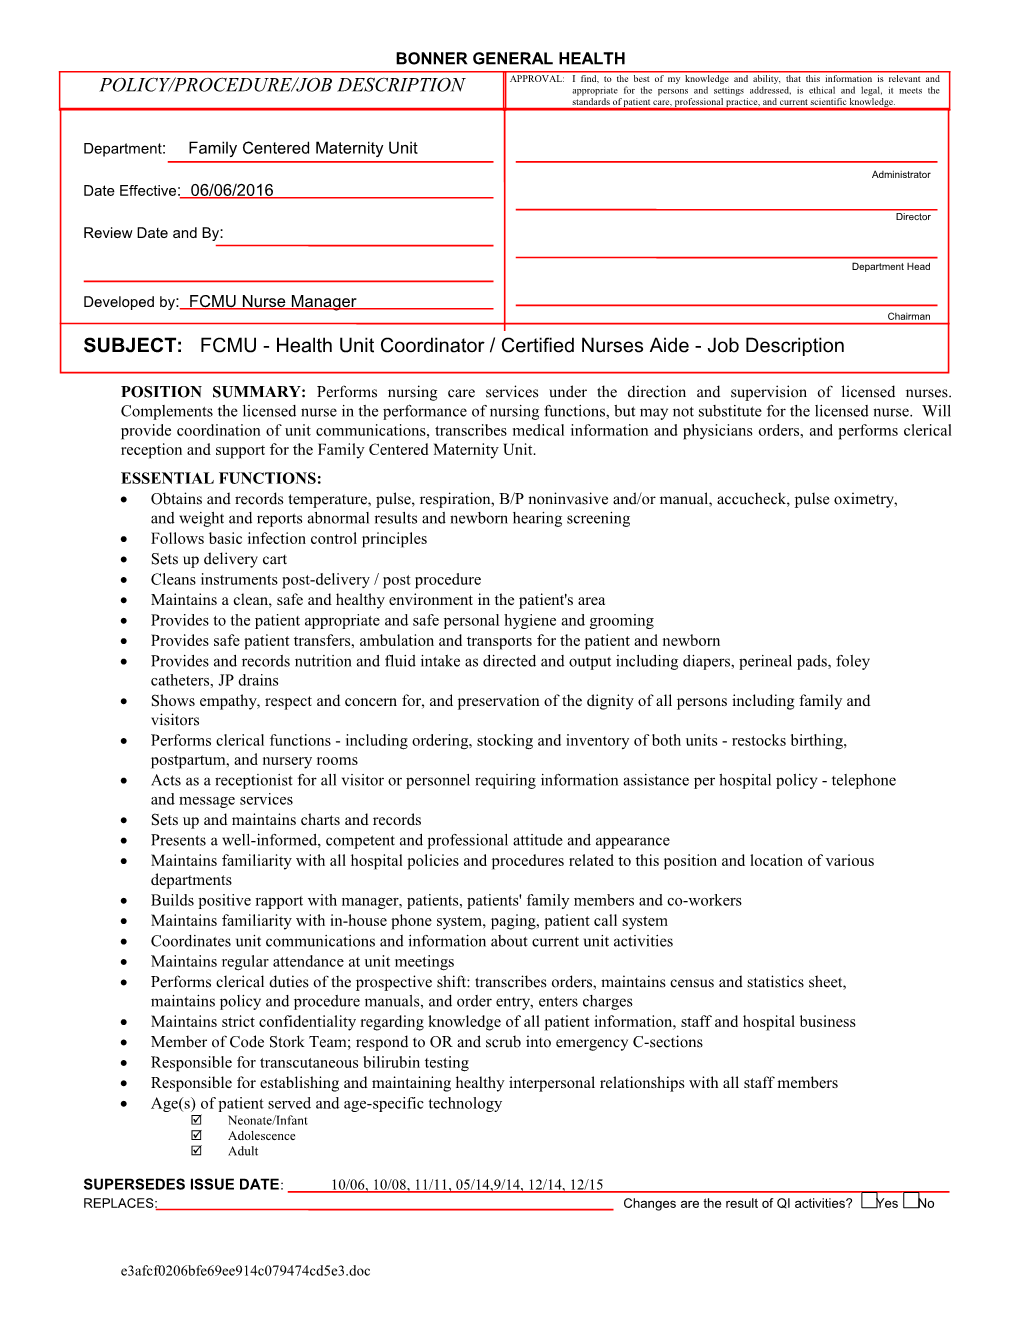 Subject:FCMU - HUC / CNA - Job Description